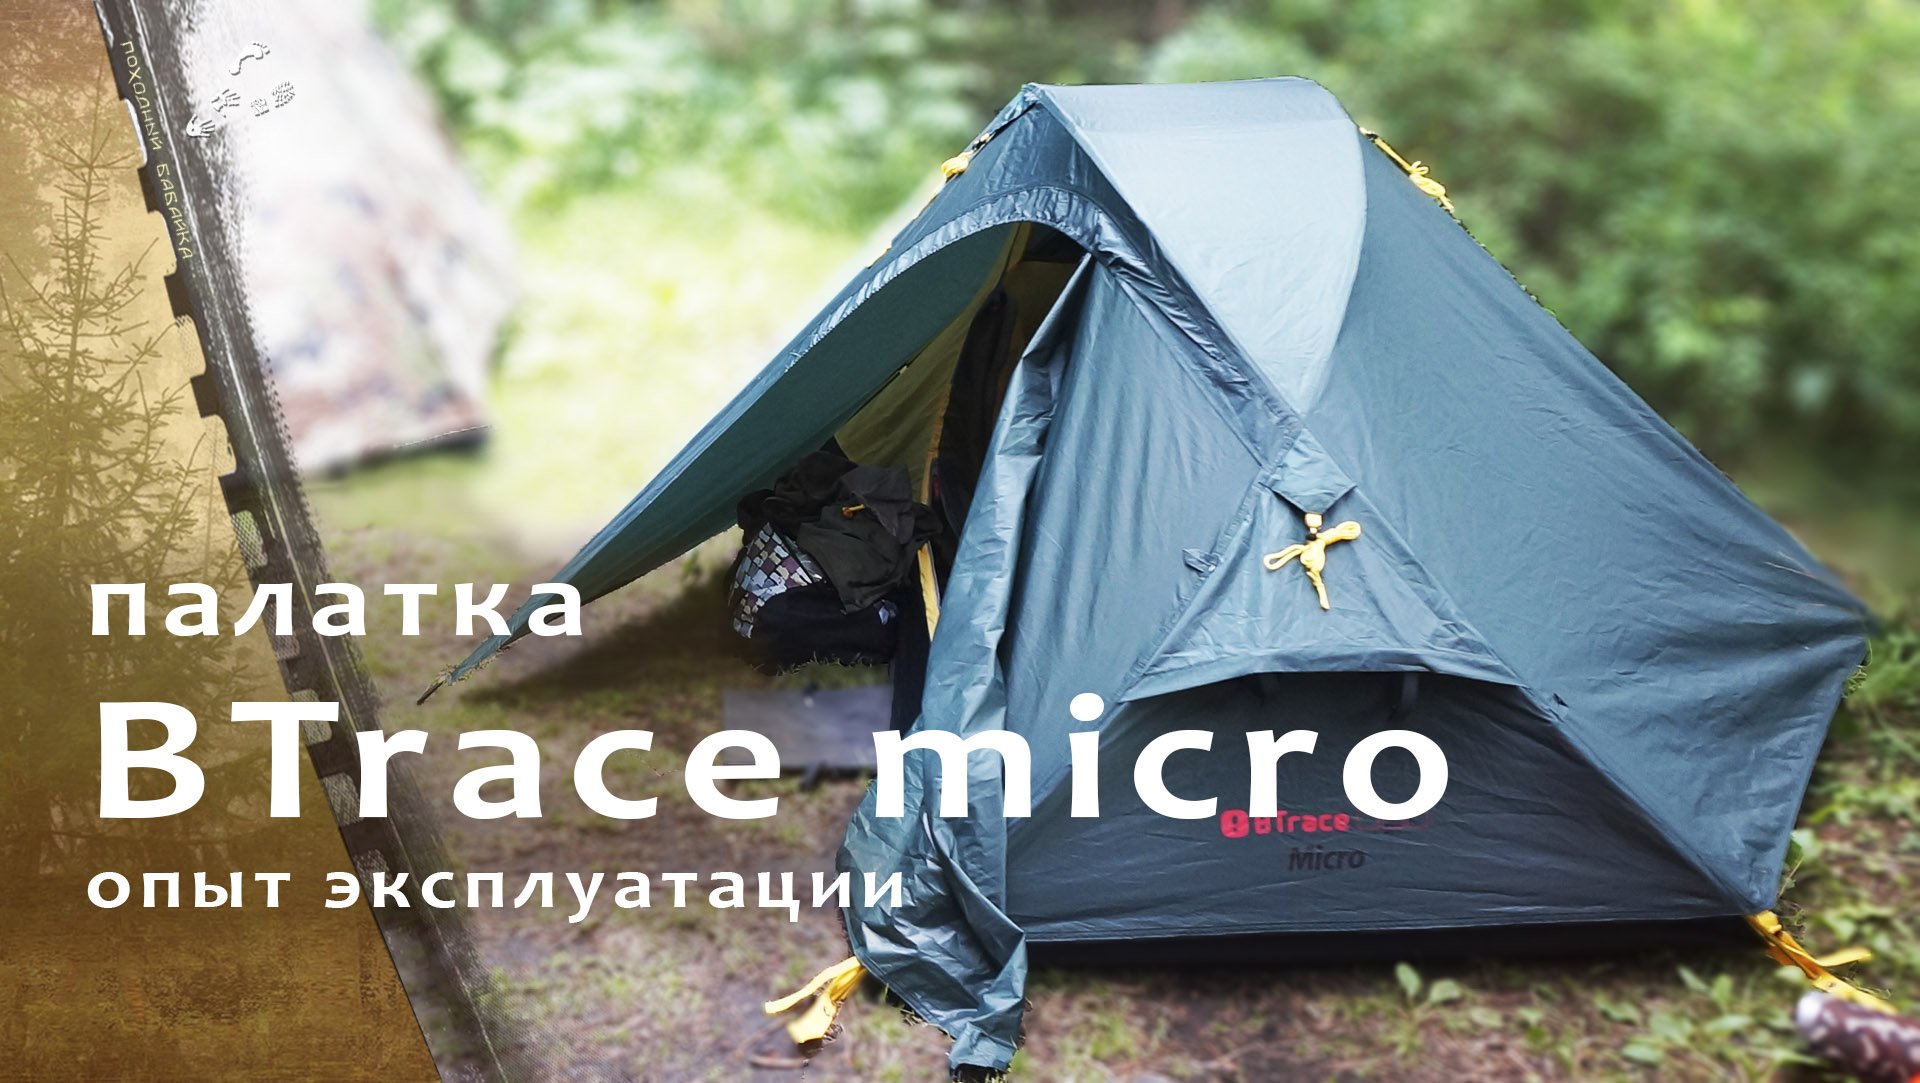 Двухместная палатка BTrace Micro / проверка в походе.